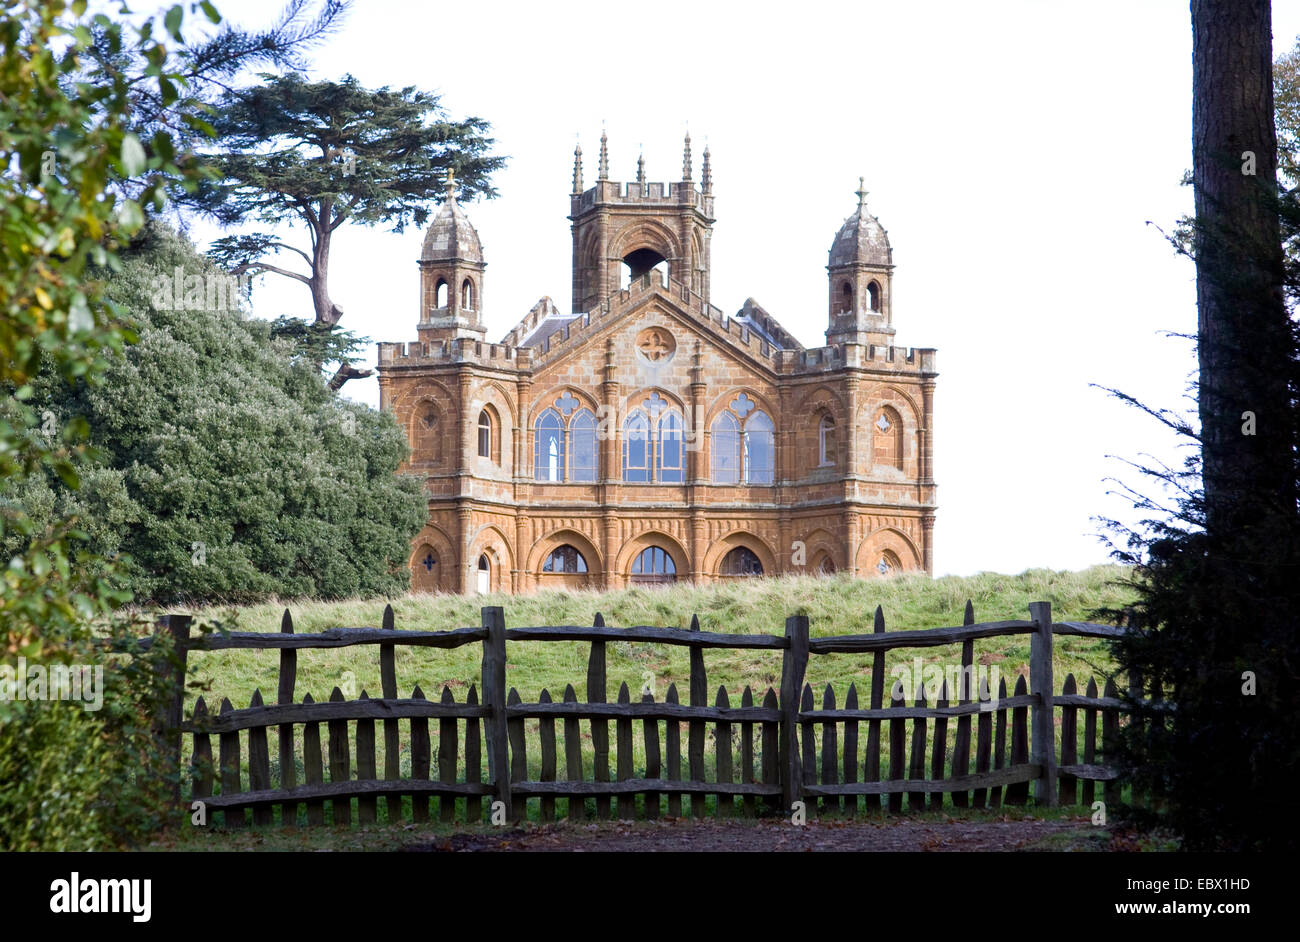 Stowe House im englischen Garten, Vereinigtes Königreich, England Stockfoto